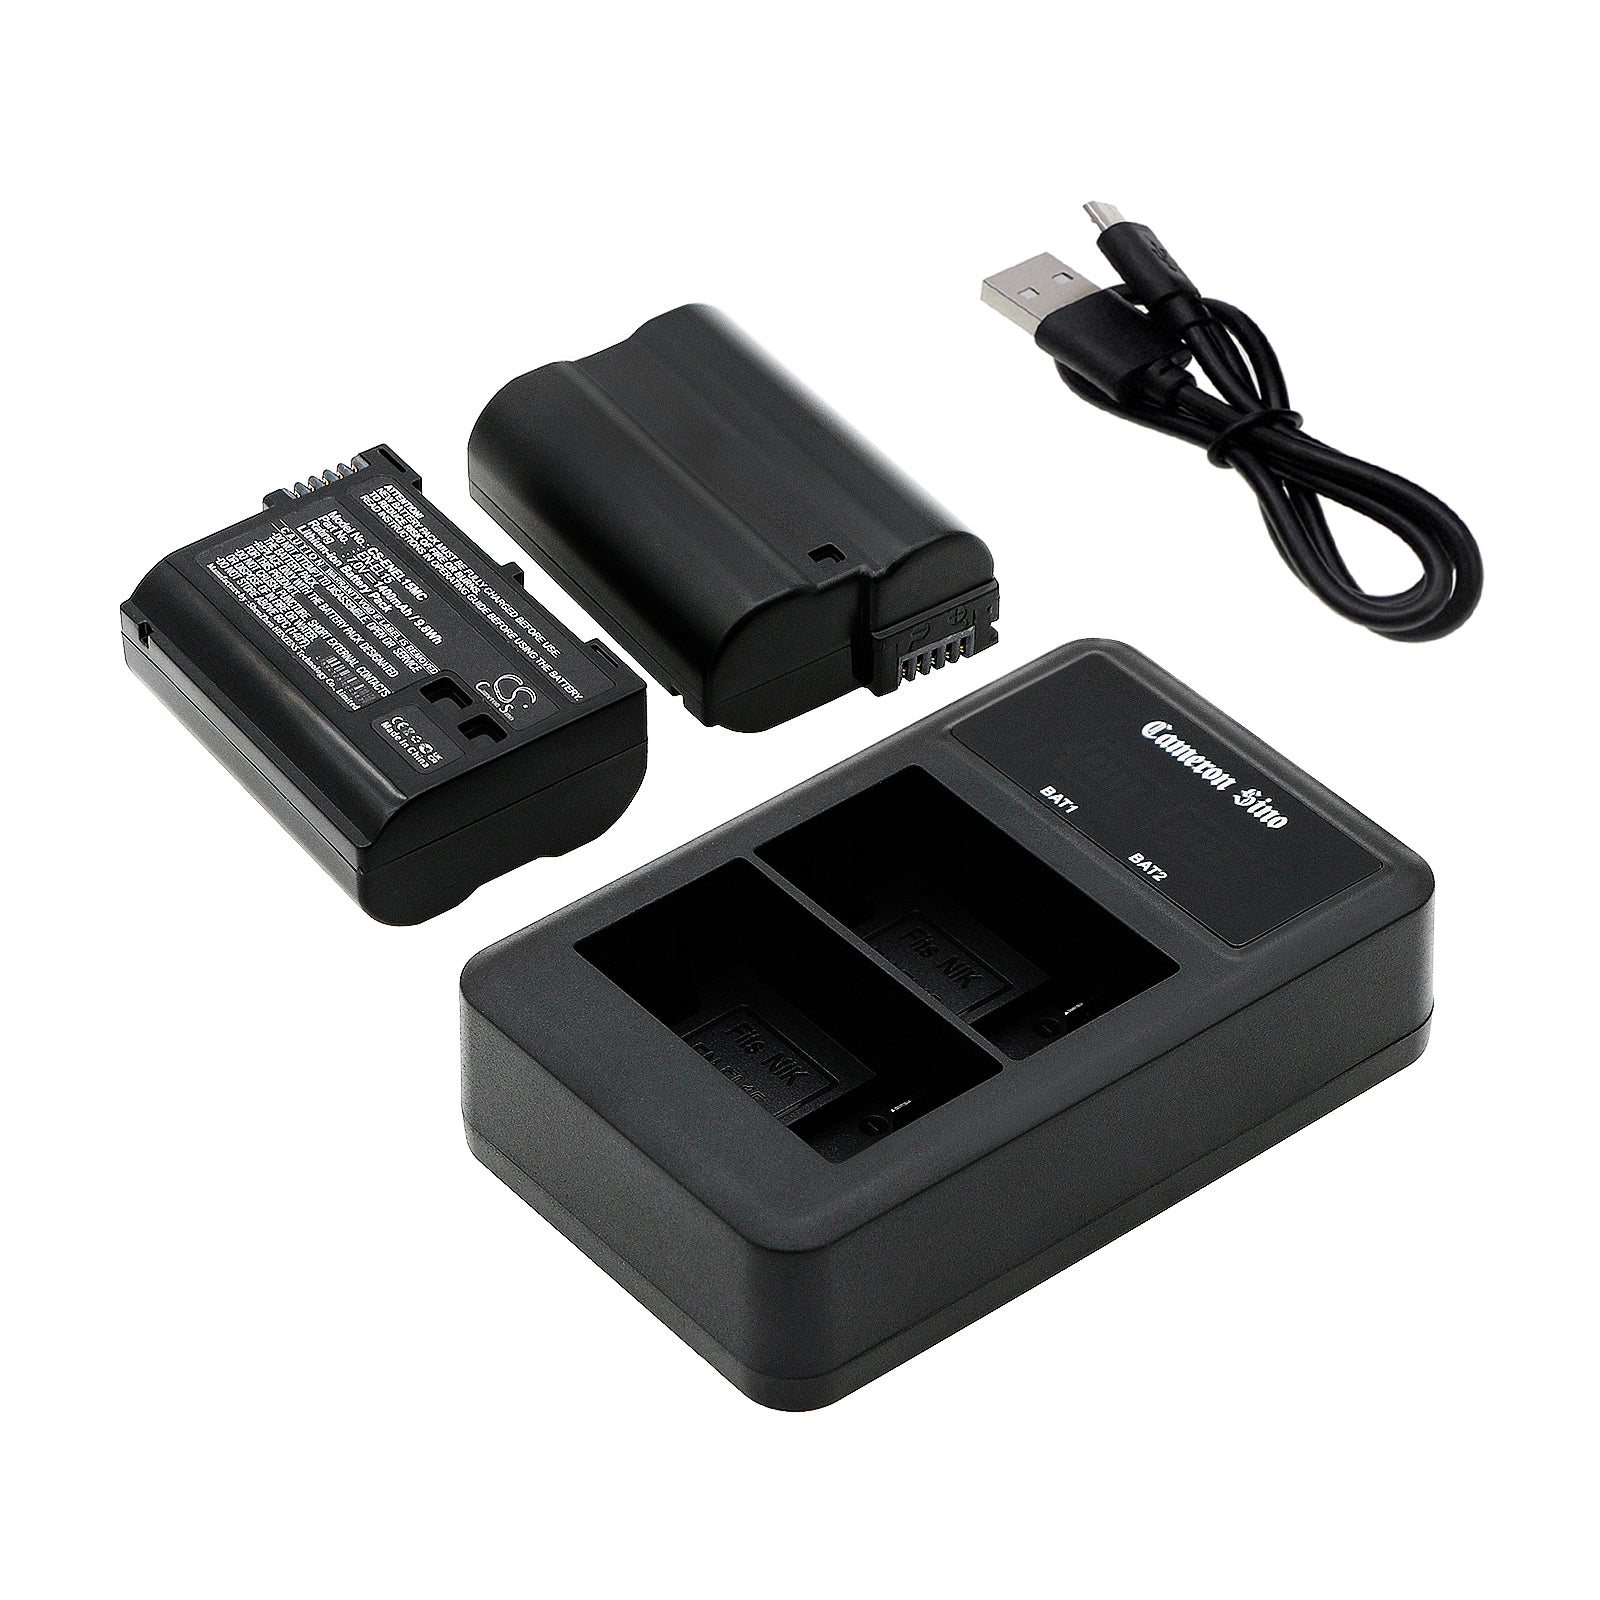 LCD USB Dual charger for EN-EL15, EN-EL15A, EN-EL15B, EL-EL15C-SMAVtronics